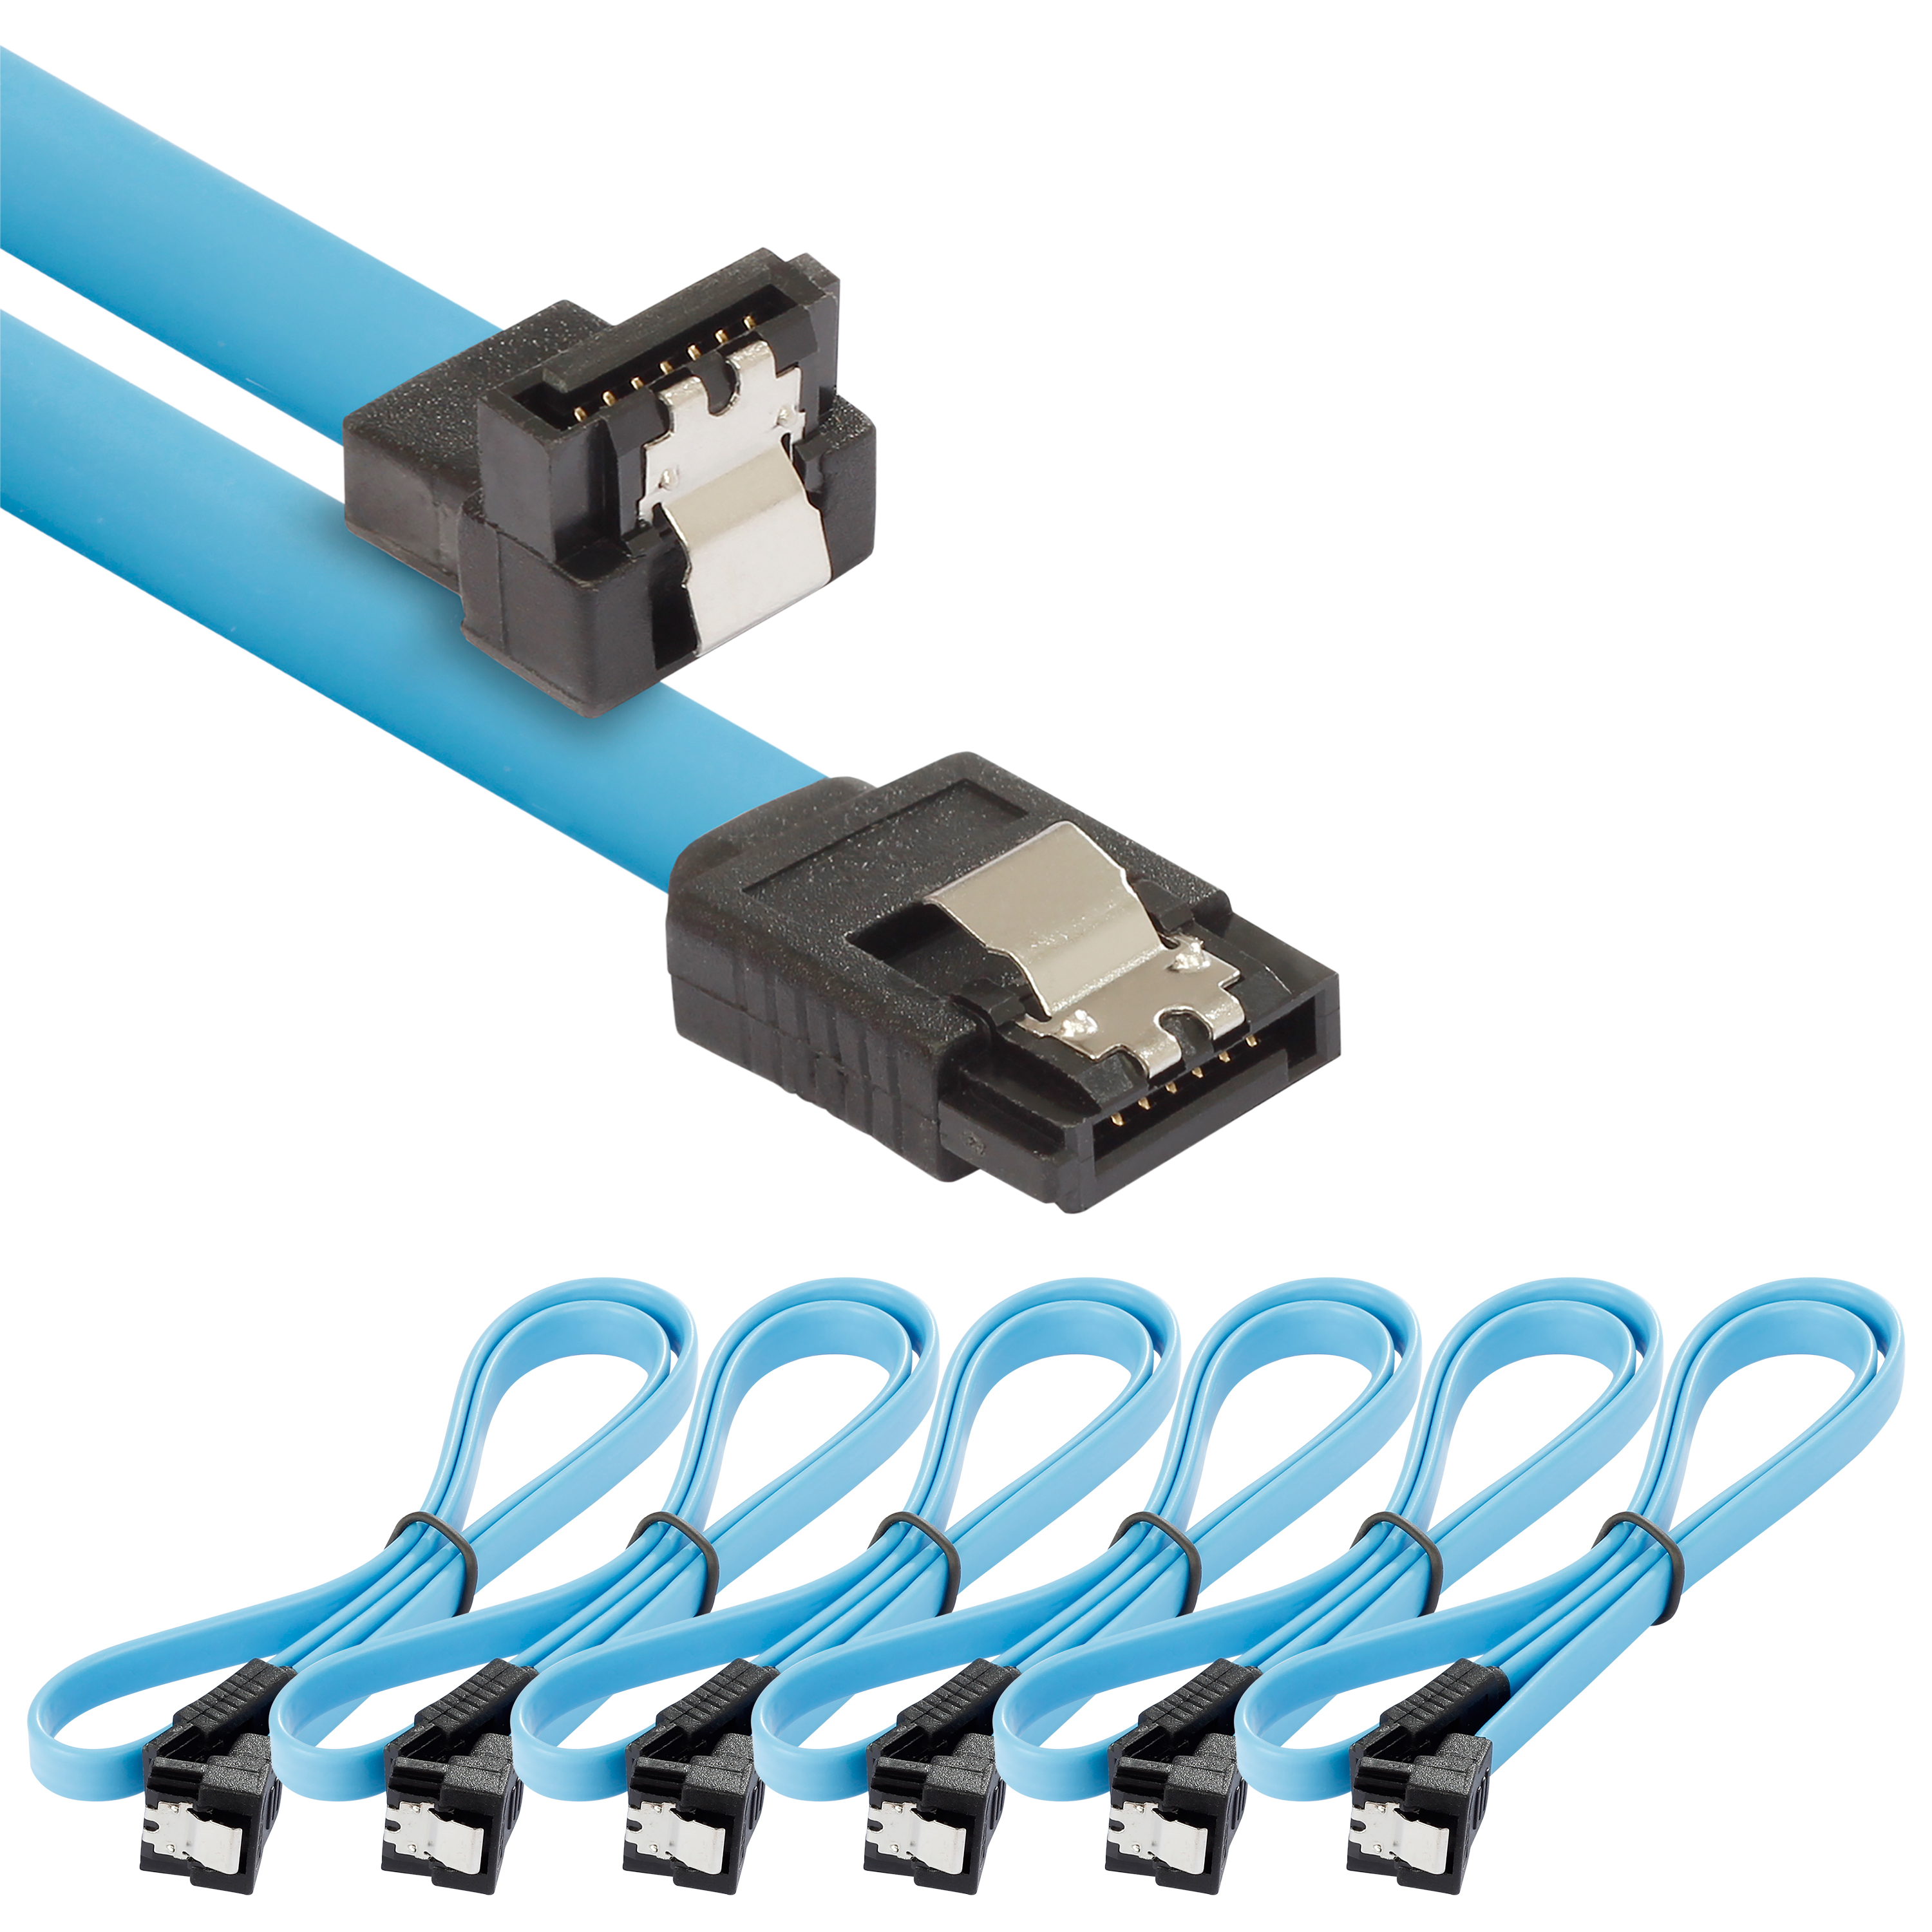 Sata 3 Kabel 0,5m, gerader/gewinkelter Stecker, 6 Stück, blau